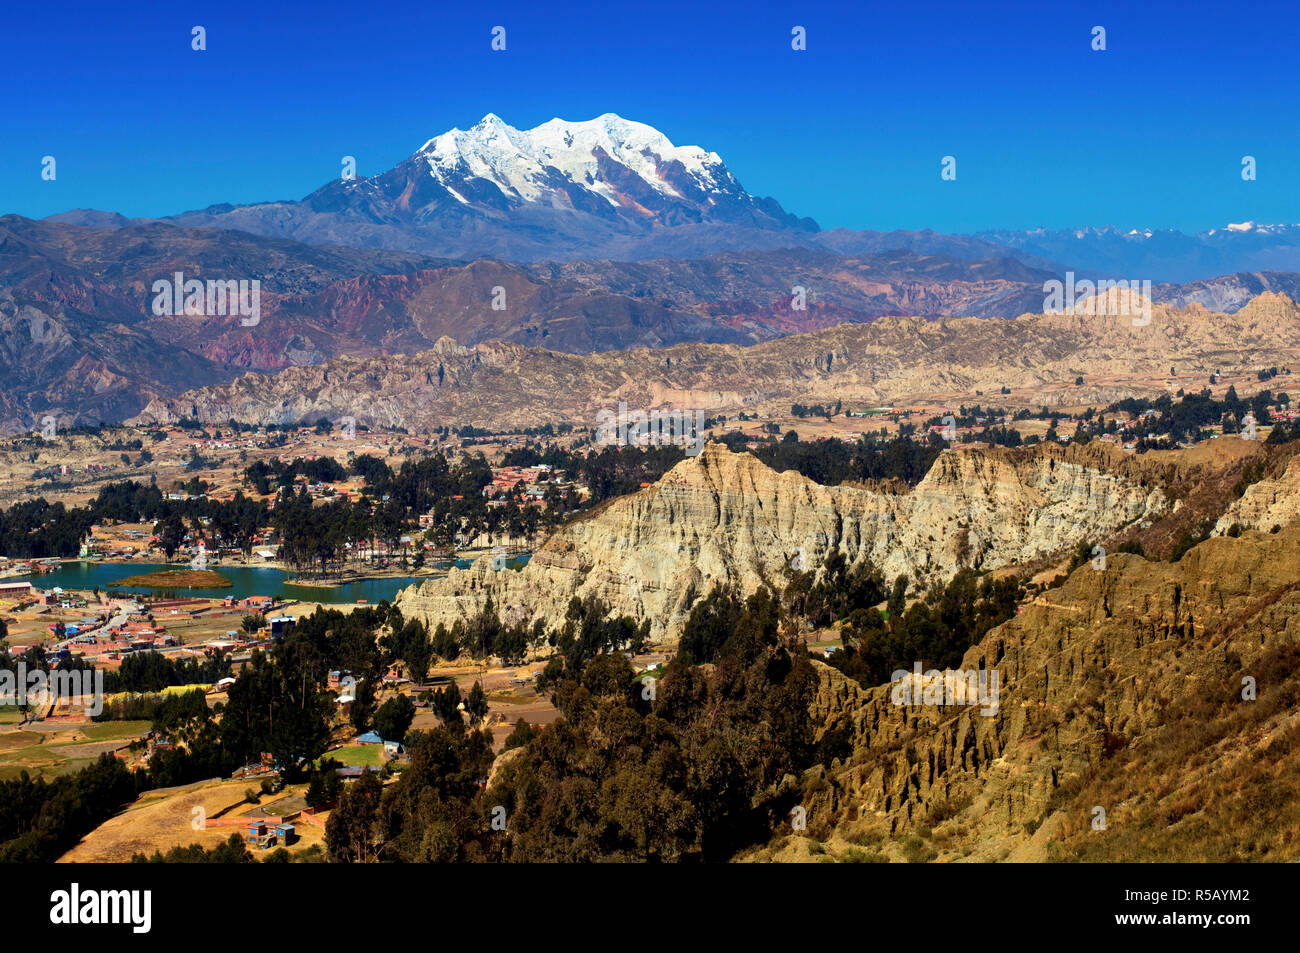 Berg Illimani, Tal des Mondes, Sandstein Felsformationen, La Paz gesehen von El Alto, Bolivien Stockfoto